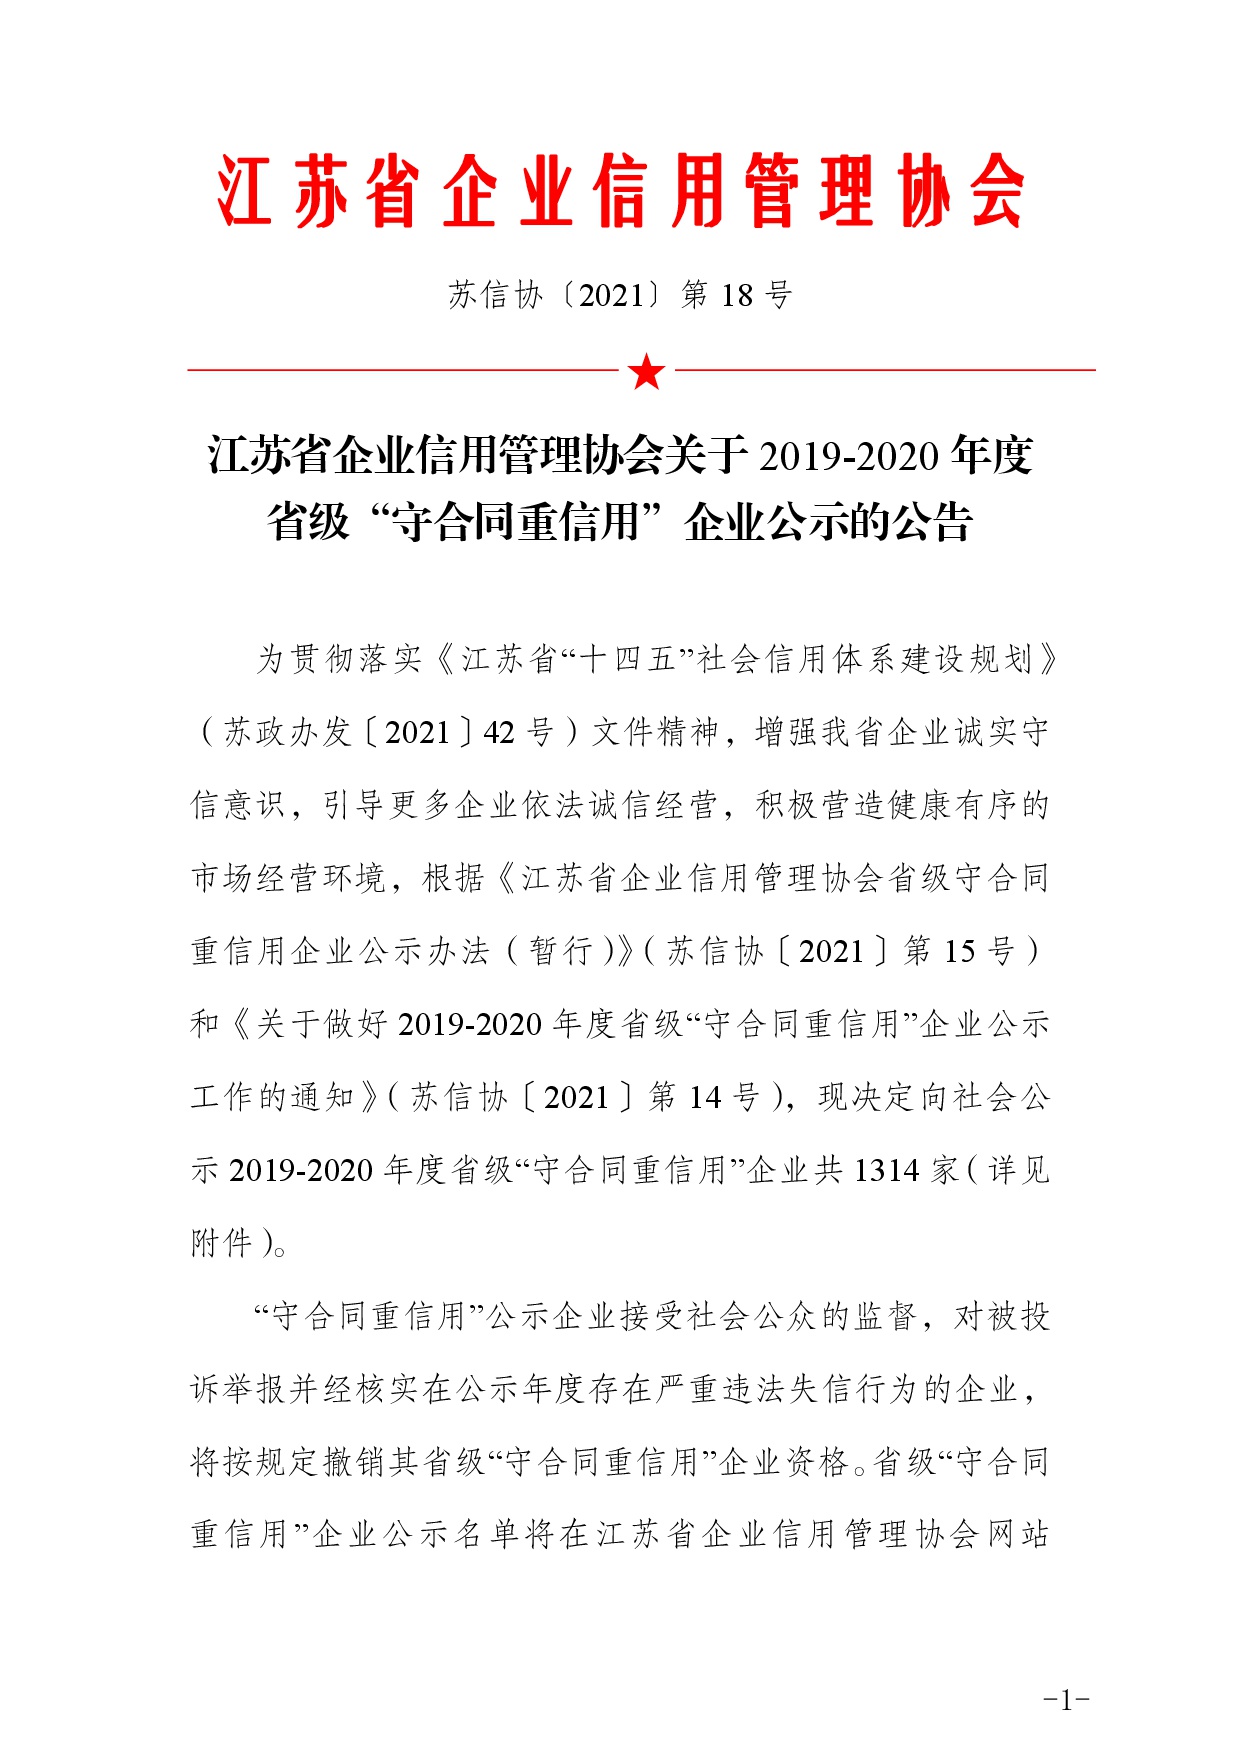 江蘇省企業信用管理協會關于 2019-2020 年度 省級“守合同重信用” 企業公示的公告